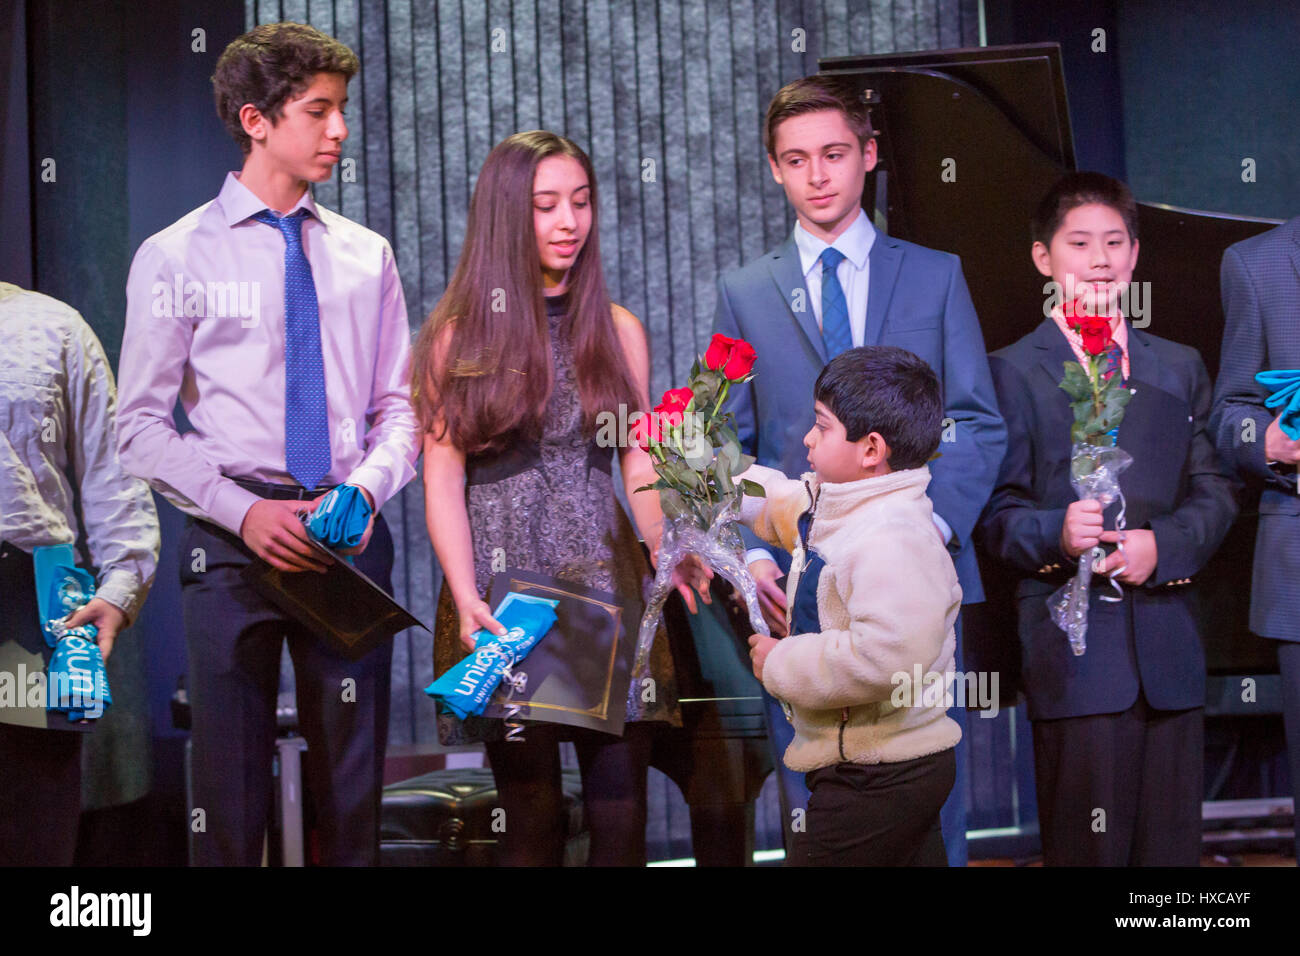 Commerce Township, Michigan - Alta scuola gli studenti sono date le rose per la raccolta di fondi per i bambini colpiti dalla guerra in Siria. Omar e Ziad Fehmi, la cui Foto Stock